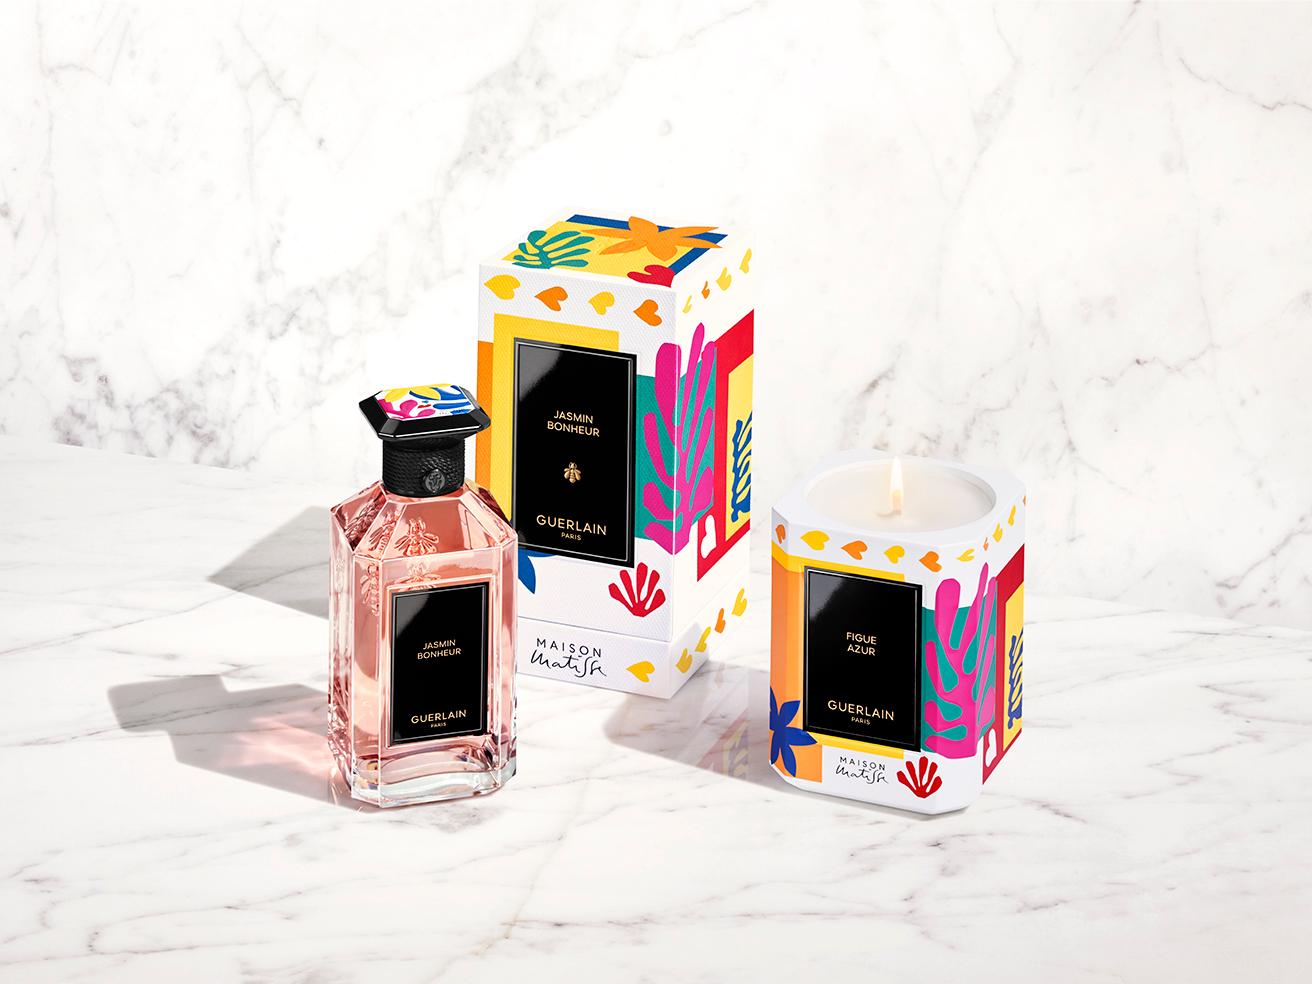 《ラール エ ラ マティエール》コレクションの最新の香り「ジャスミン ボヌール」。左から〈メゾン マティス〉エディションのデザインをエンボス加工で施した「エクセプショナル プレート」キャップの200mlボトル、中央はそのボックス。右はマティスが愛した南仏の芳香を感じさせるイチジクの香りのキャンドル《フィグ アズール フレグラス キャンドル メゾン マティス エディション》。